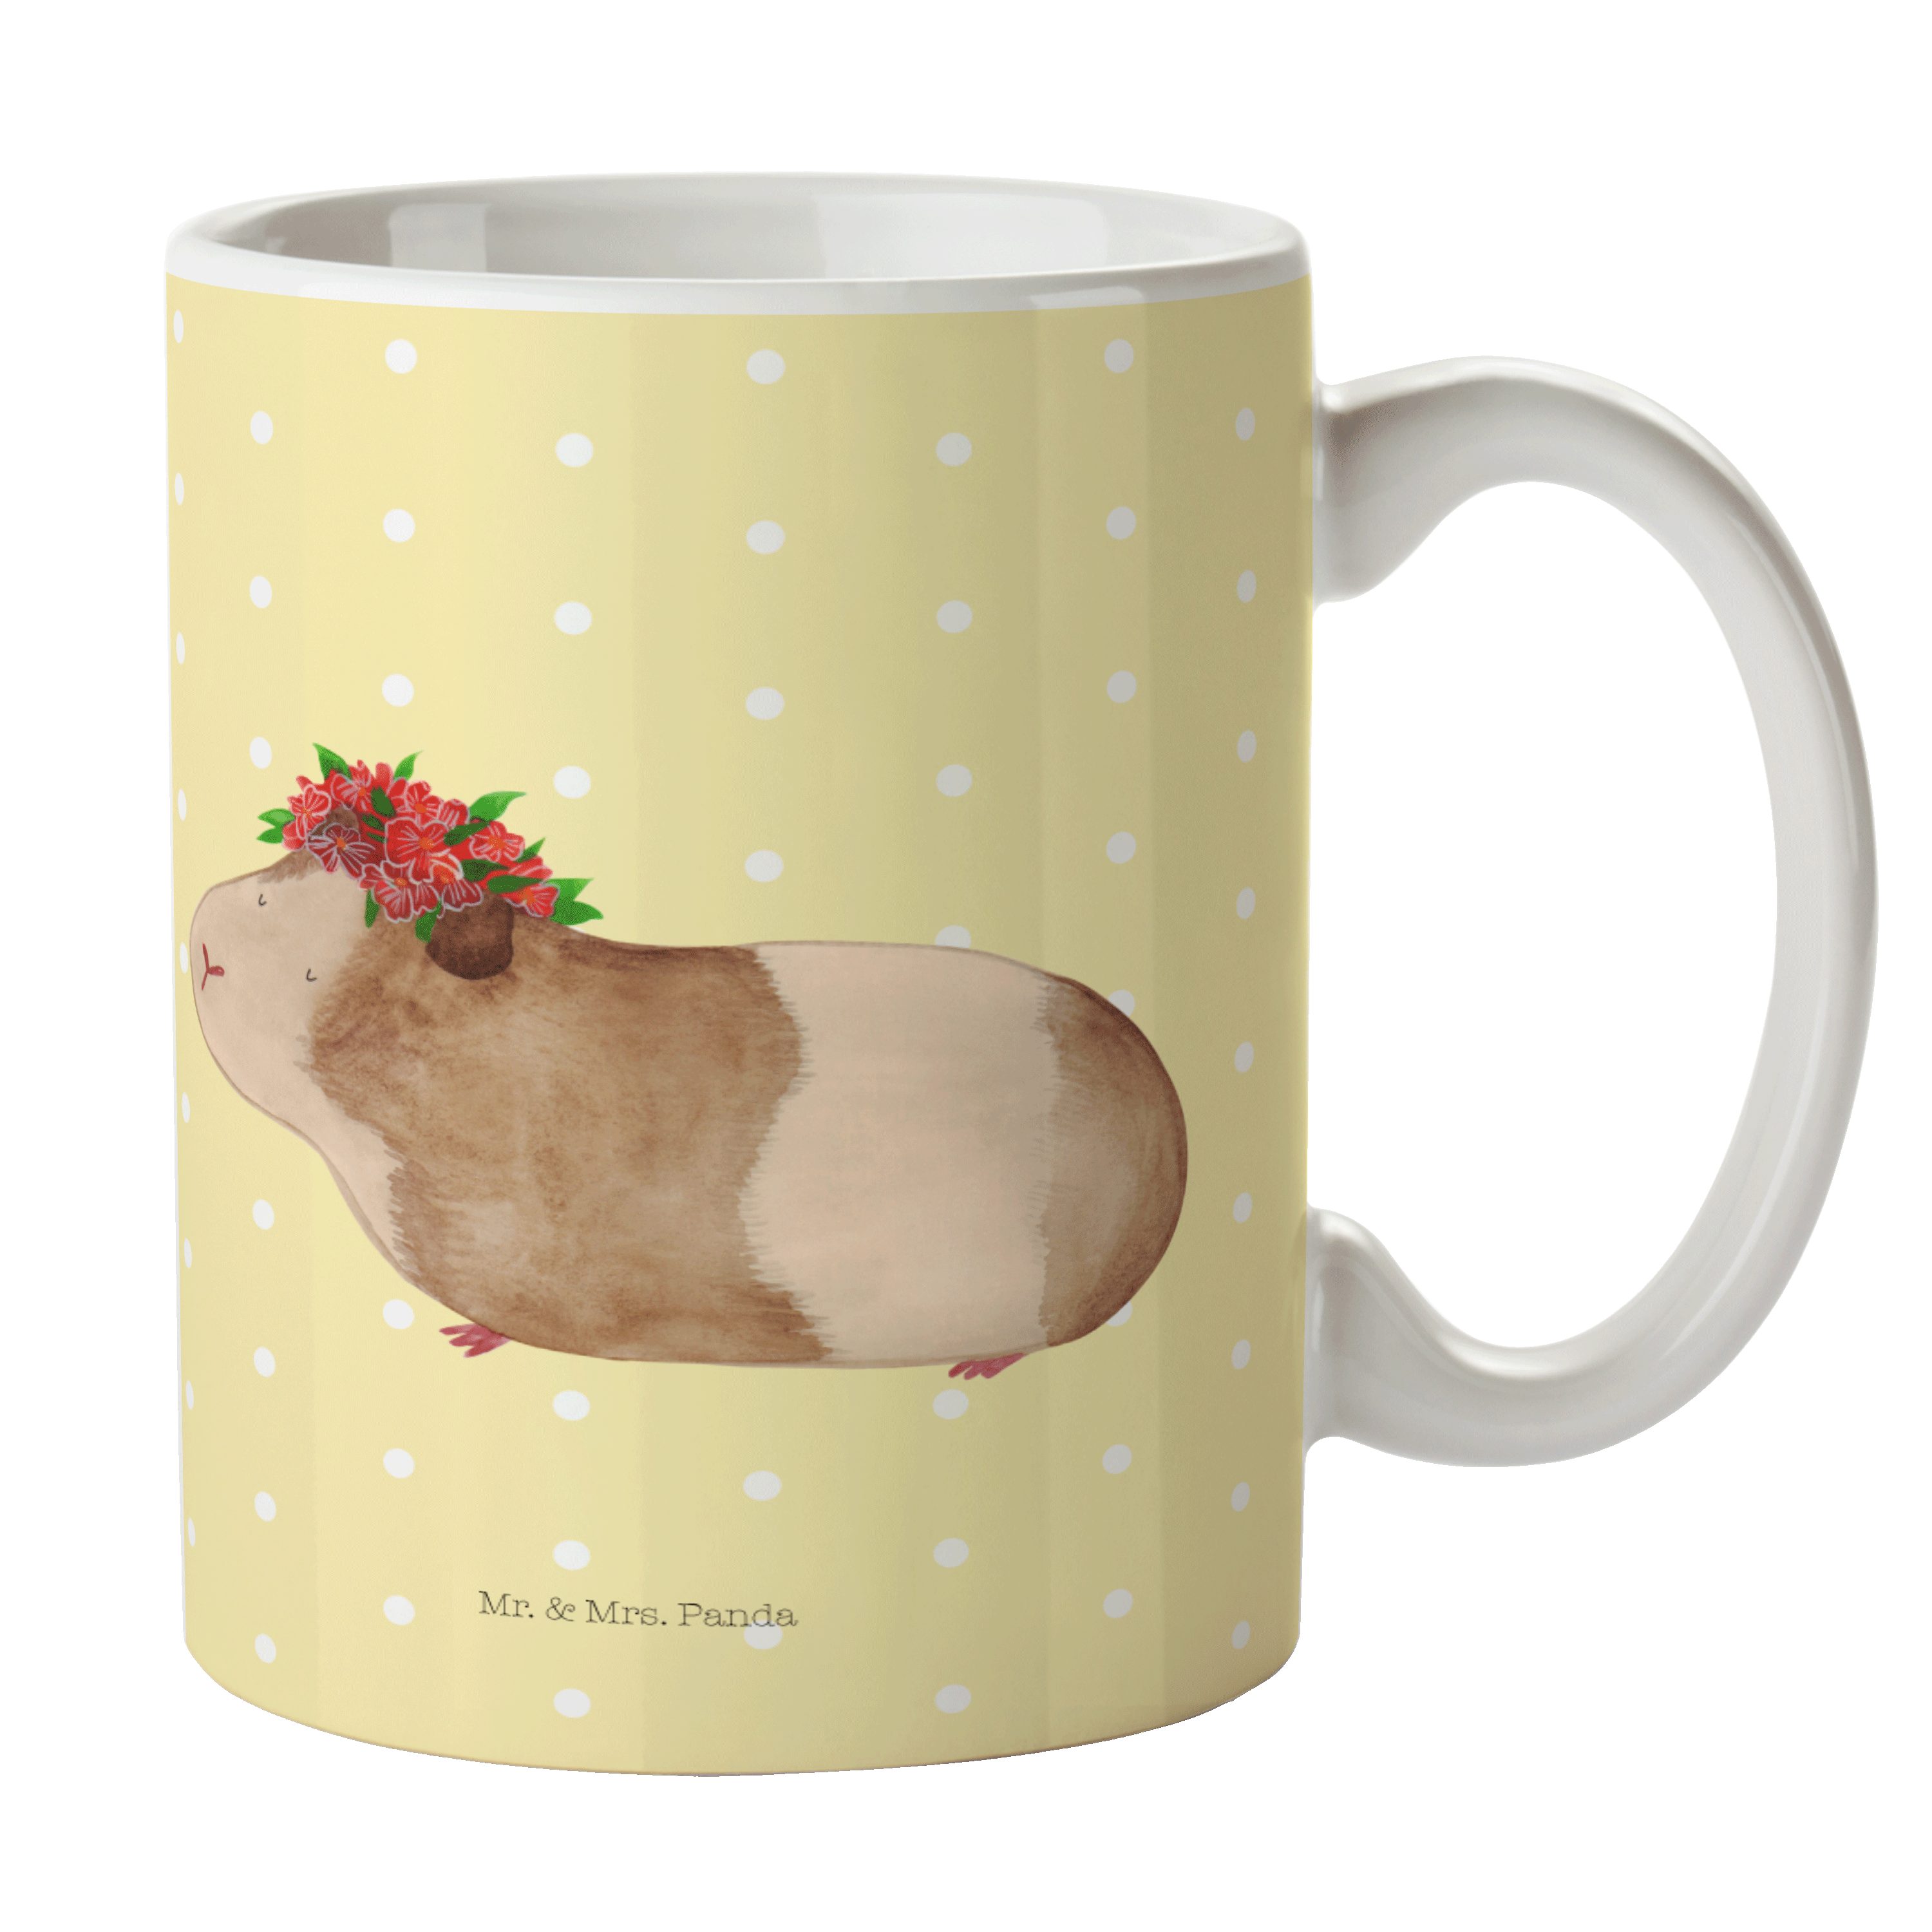 Mr. & Mrs. Panda Tasse Meerschweinchen weise - Gelb Pastell - Geschenk, Porzellantasse, Tier, Keramik | Tassen